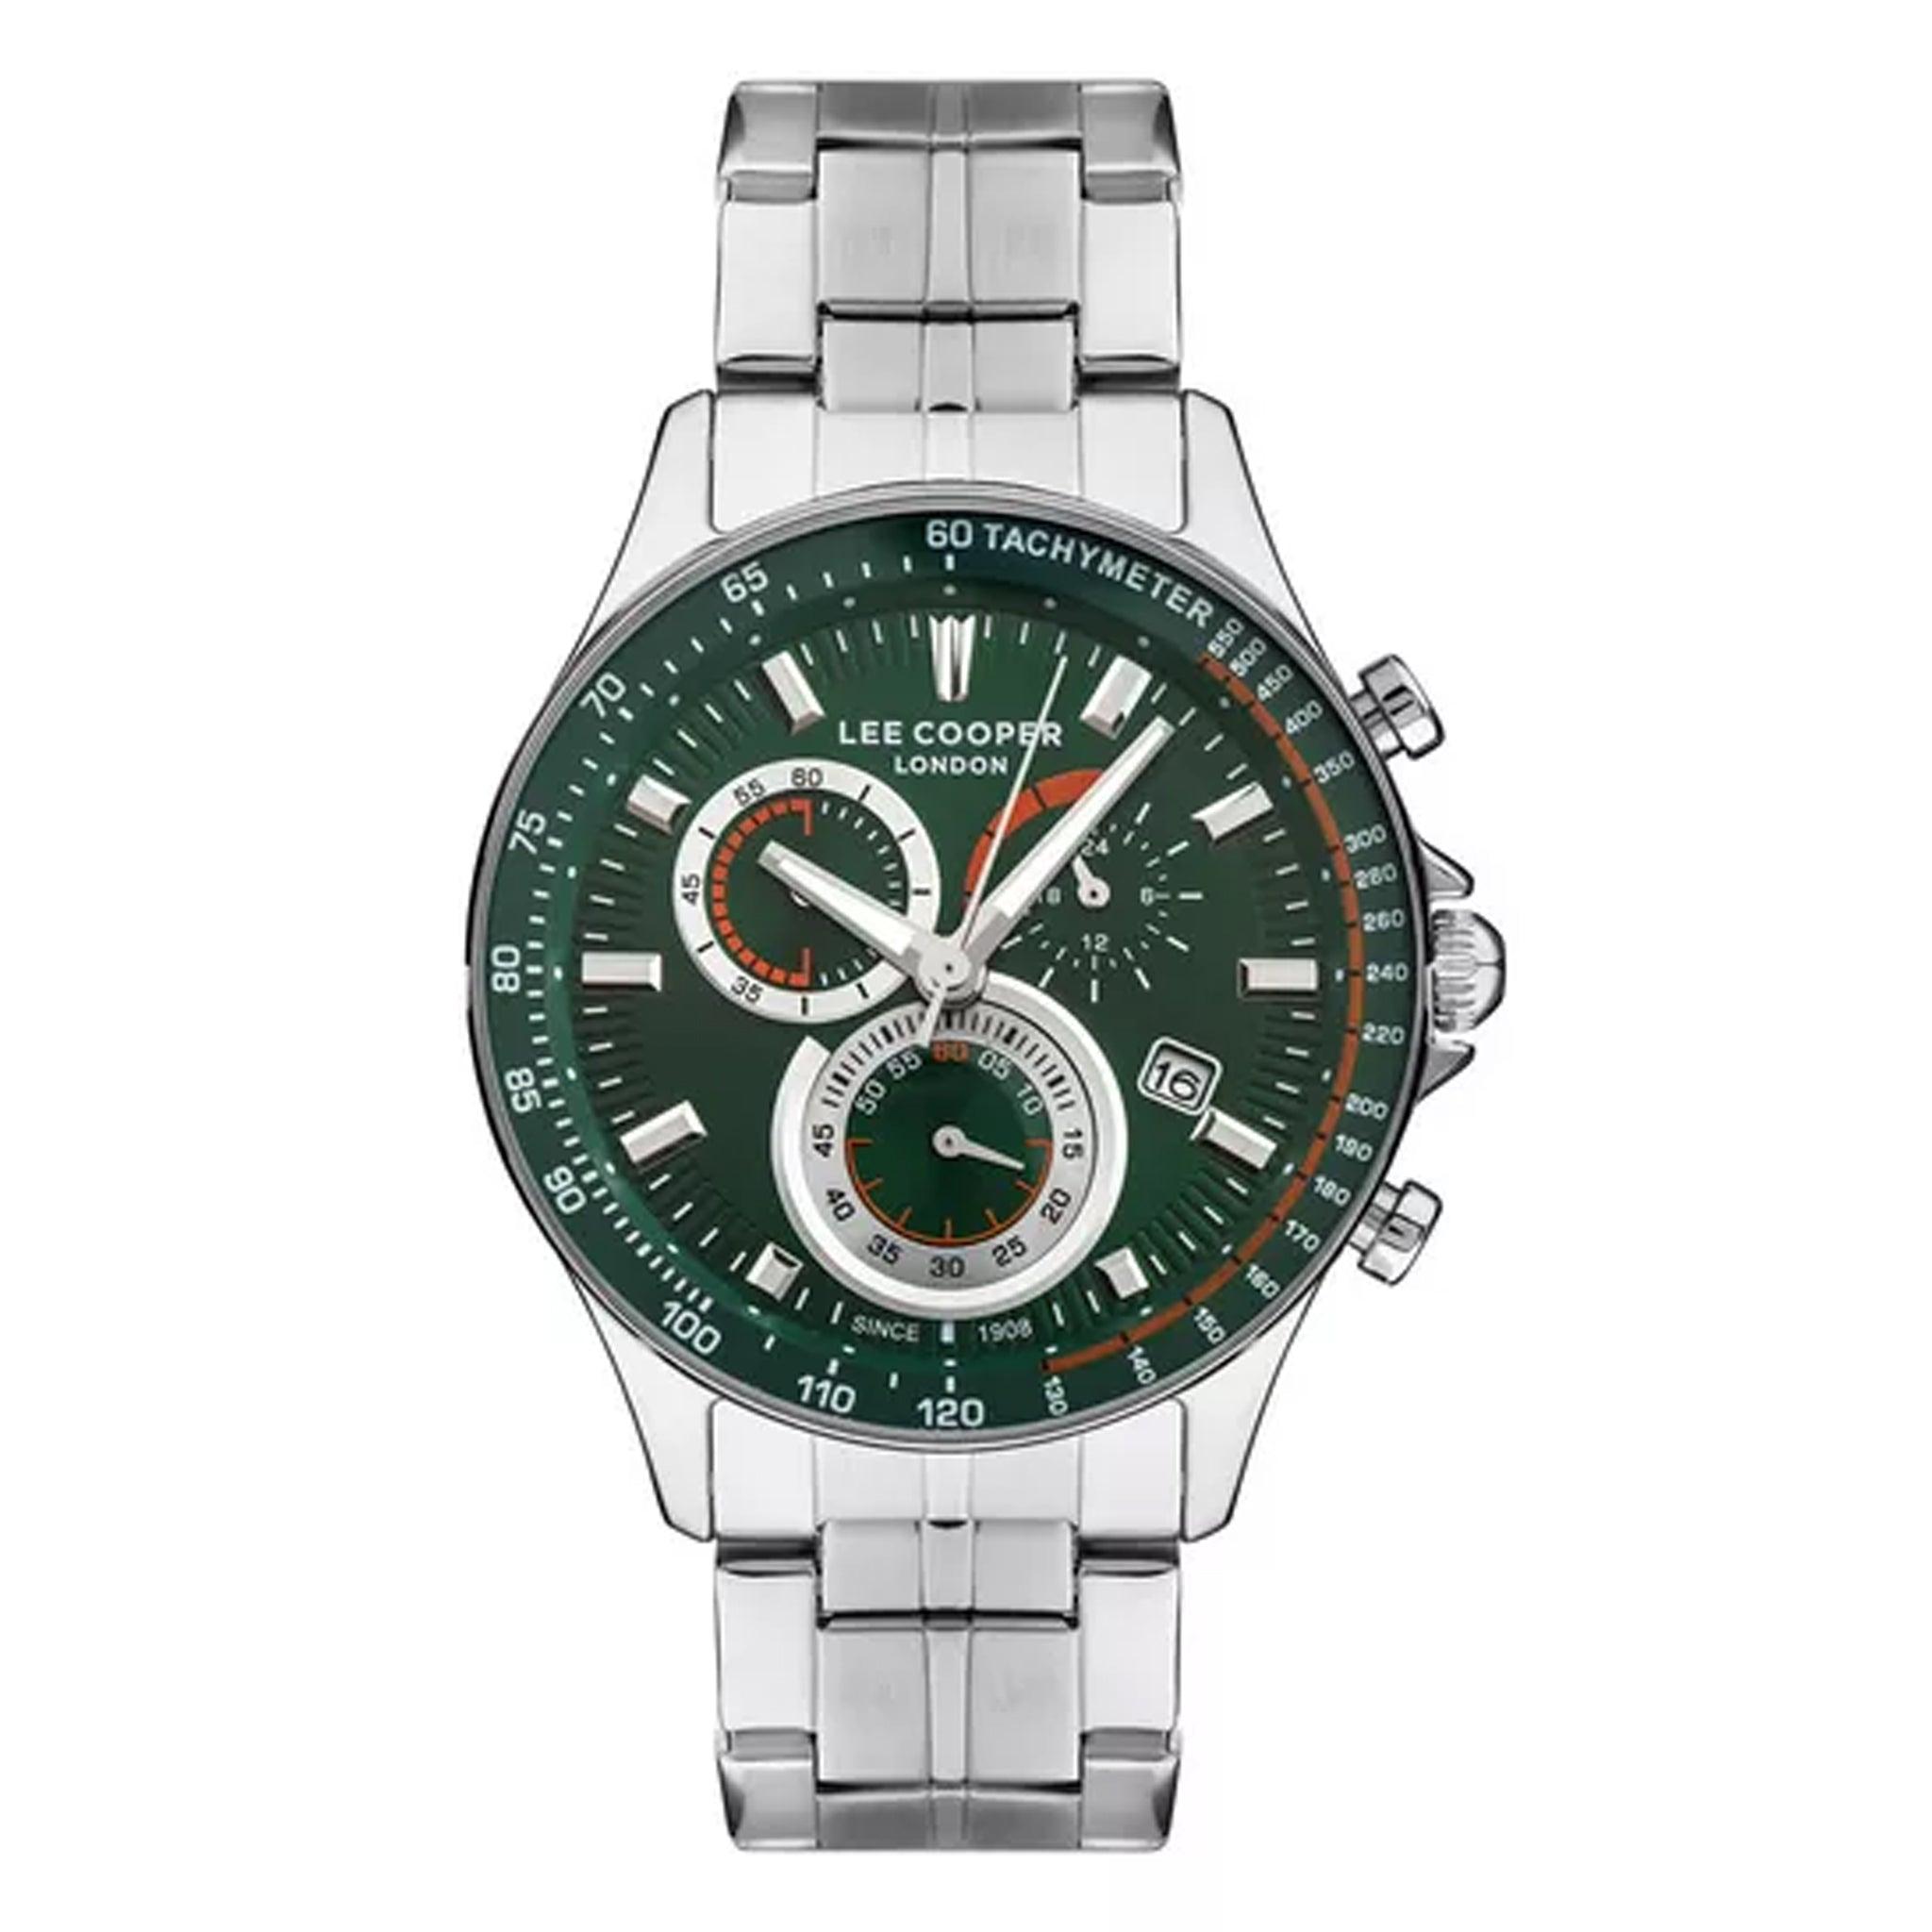 ساعة يد رجالية - أخضر و مينا باللون الأخضر - بحزام فضي فولاذي مقاوم للصدأ لي كوبر Lee Cooper Men's Multi Function Watch